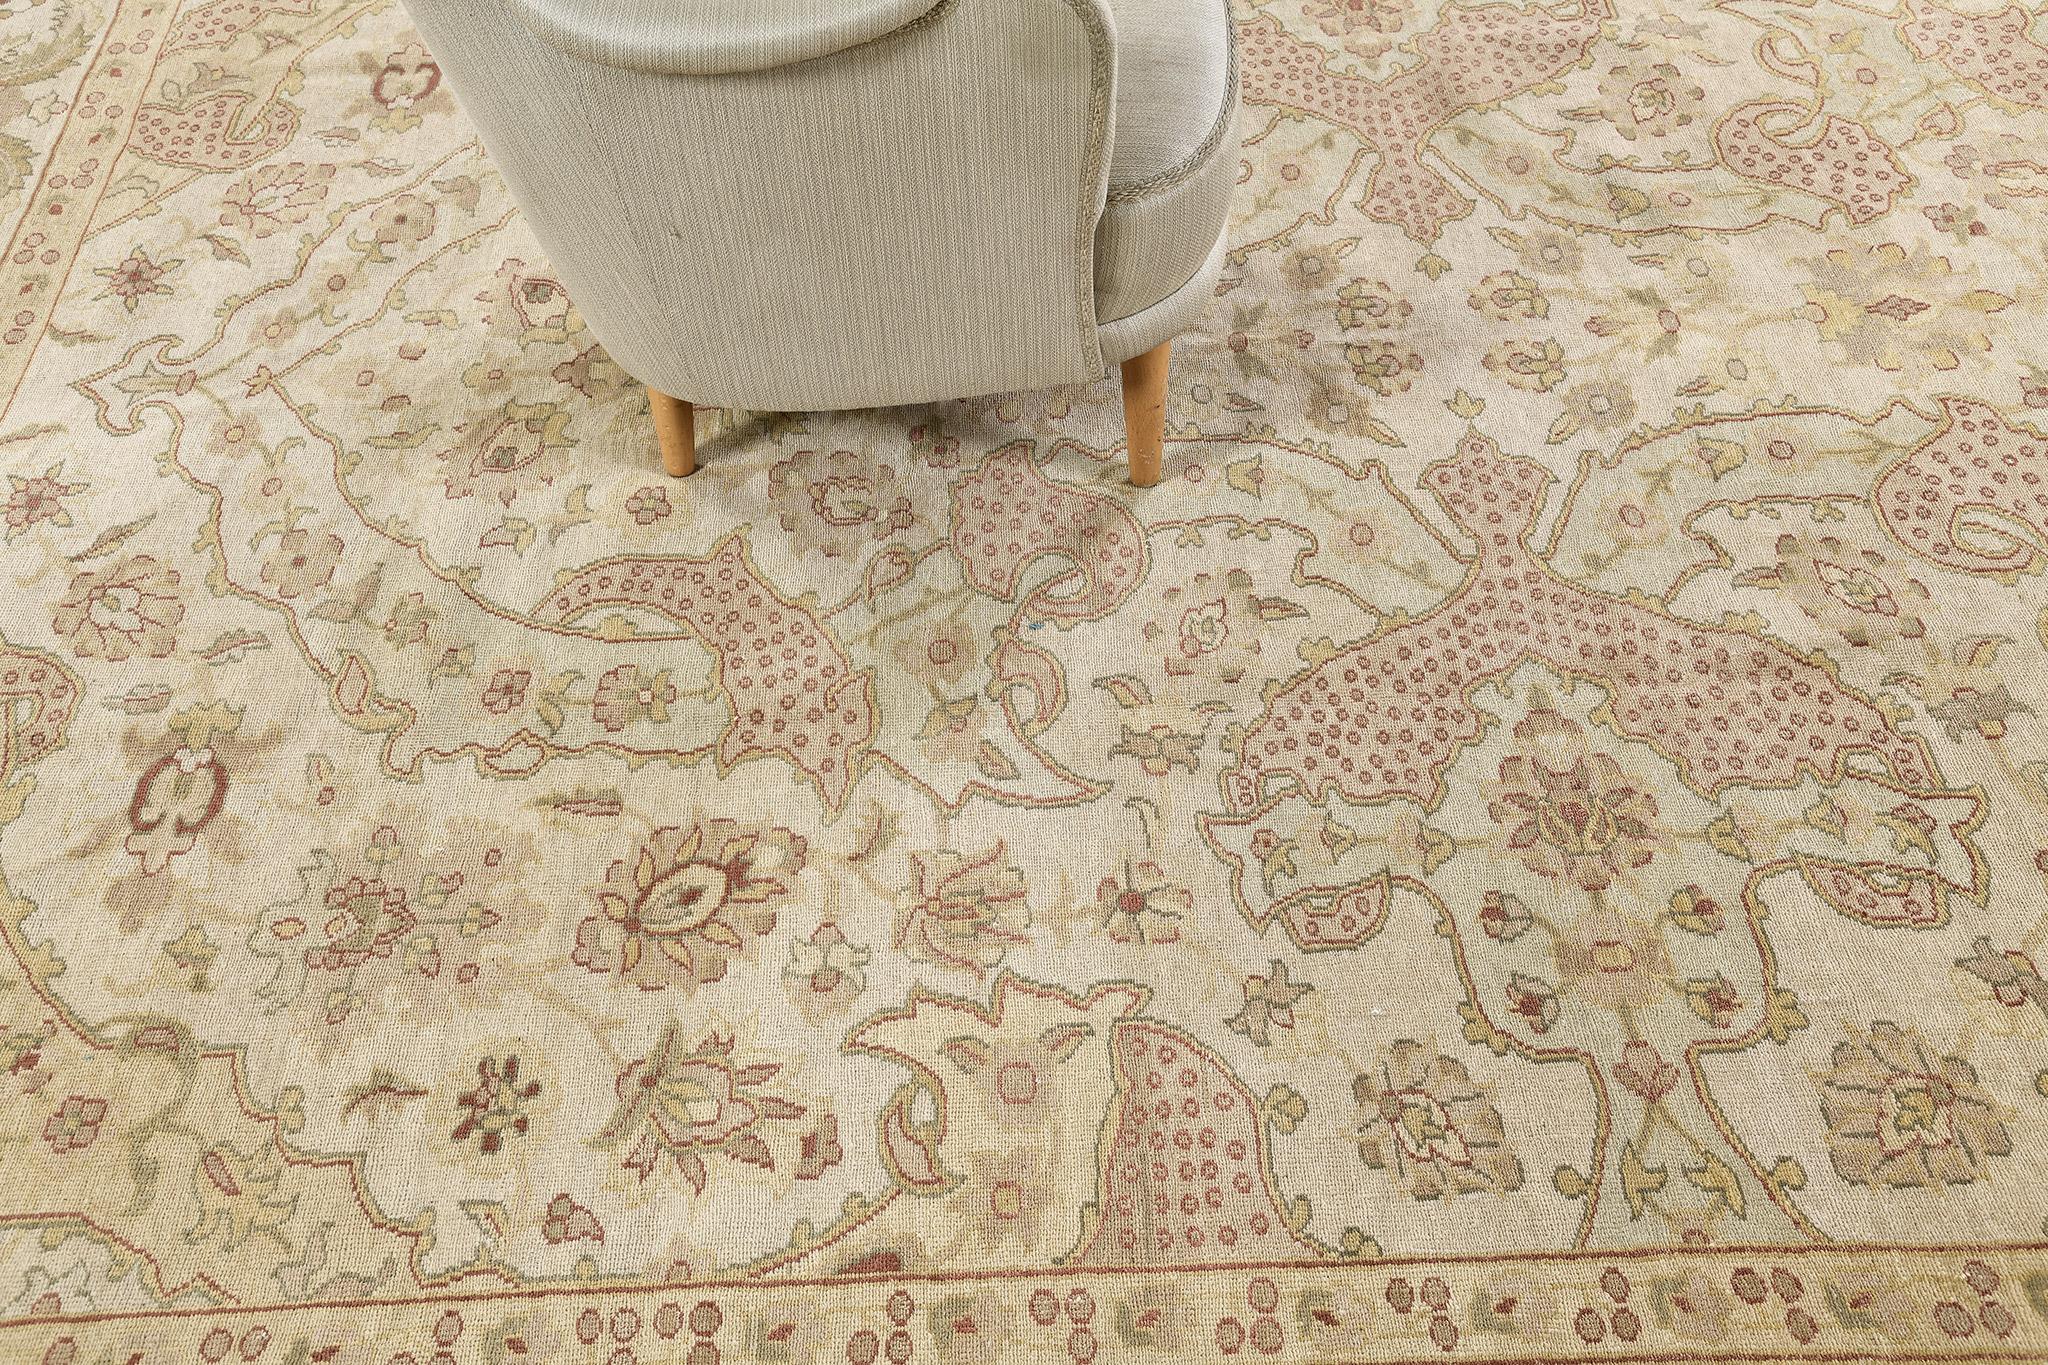 Denken Sie an ein europäisches oder westliches Thema mit einem Hauch von Luxus? Dieser Teppich ist perfekt für Ihr Interieur! Dieser Amritsar Design-Teppich hat einen einzigartigen doppelten Schuss und asymmetrische Knoten, die immer noch in Mode